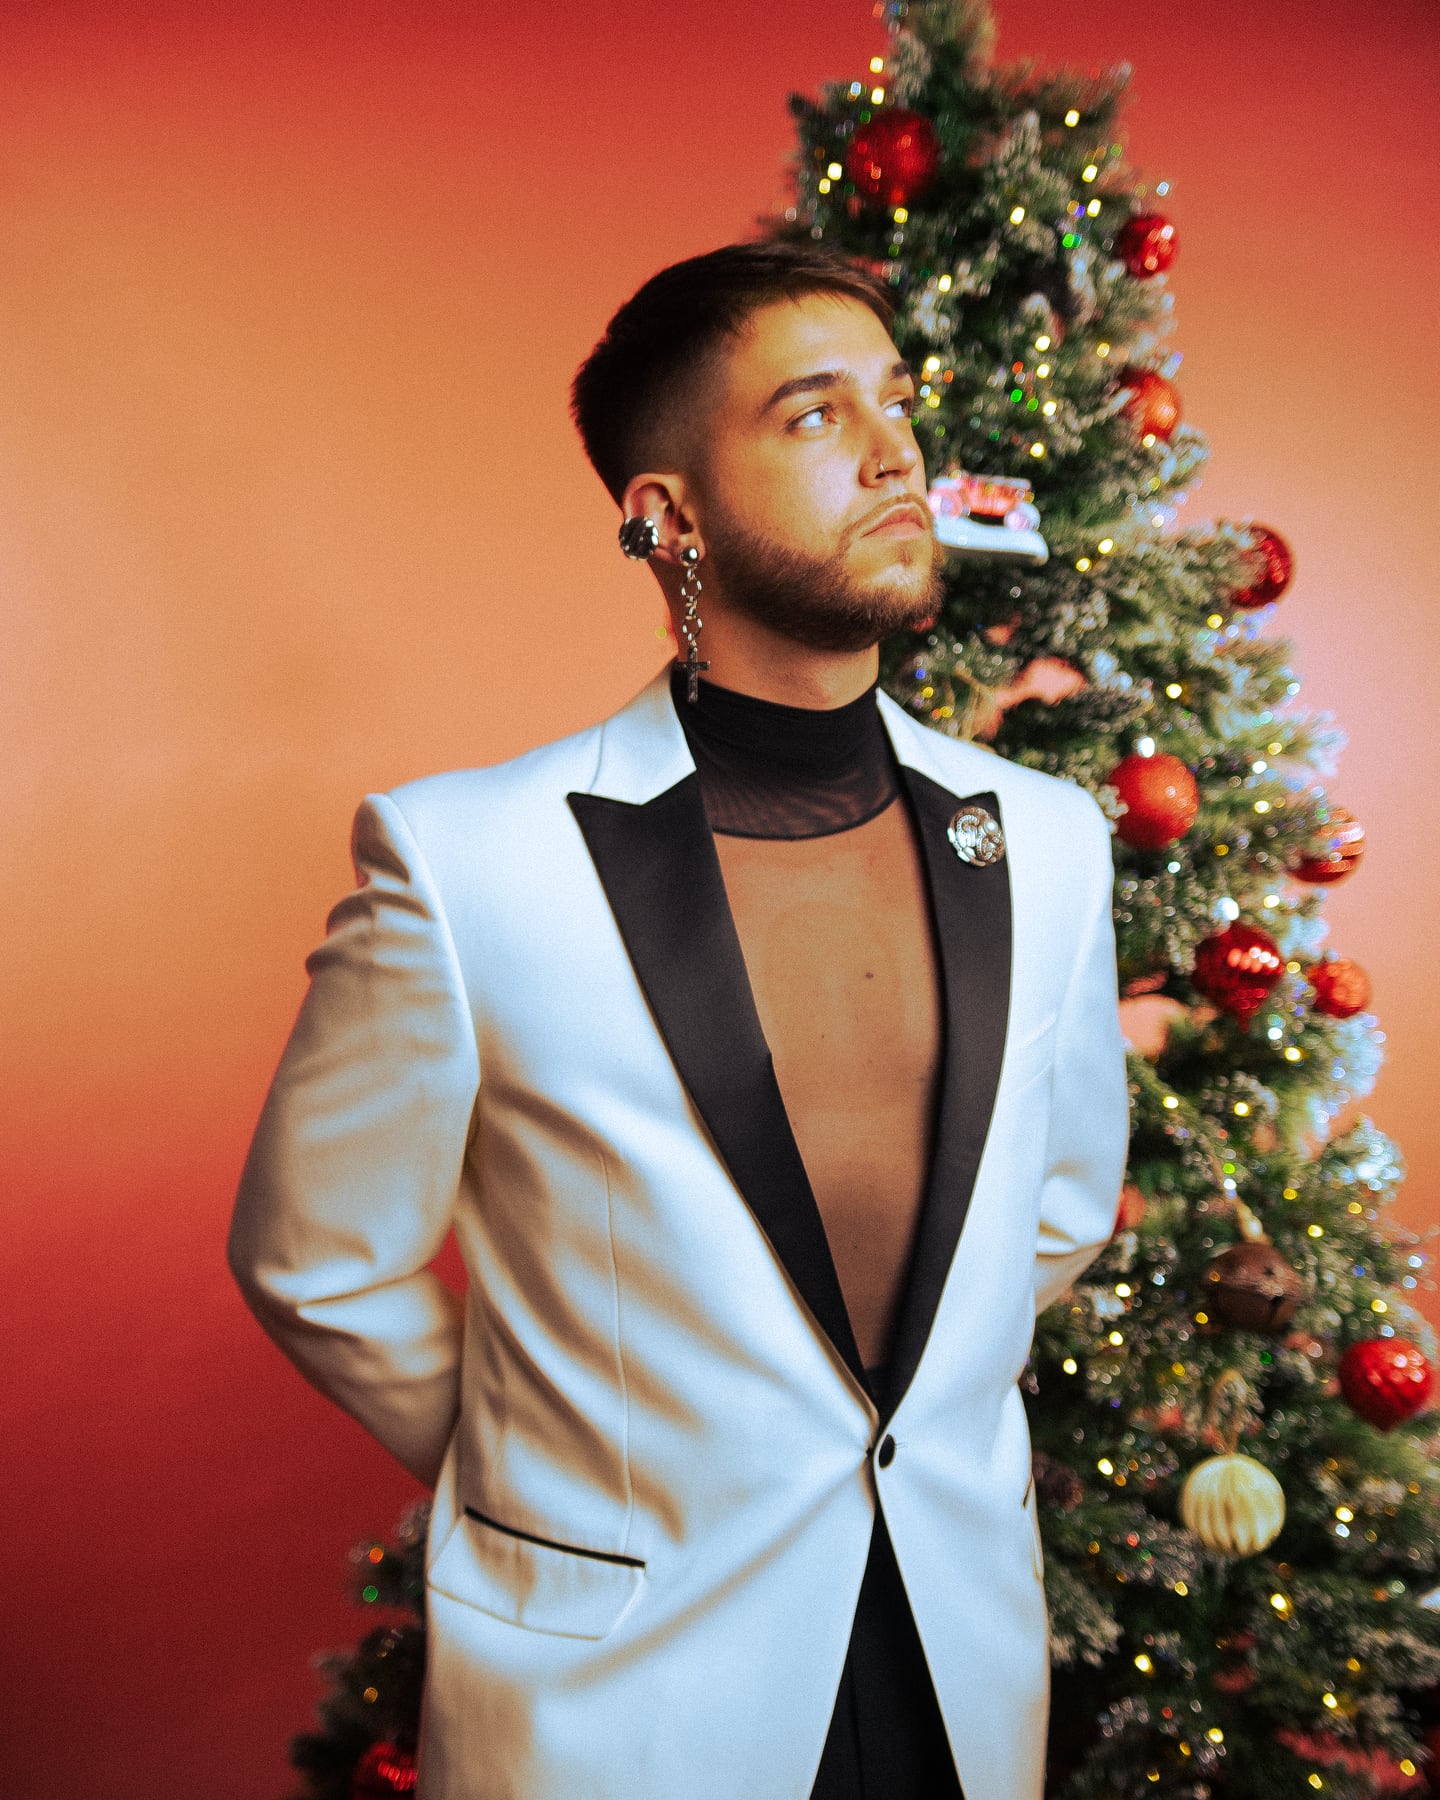 El cantante, músico y compositor canario st. Pedro lanza su EP de Navidad titulado "St. Pedro’s Christmas Special".